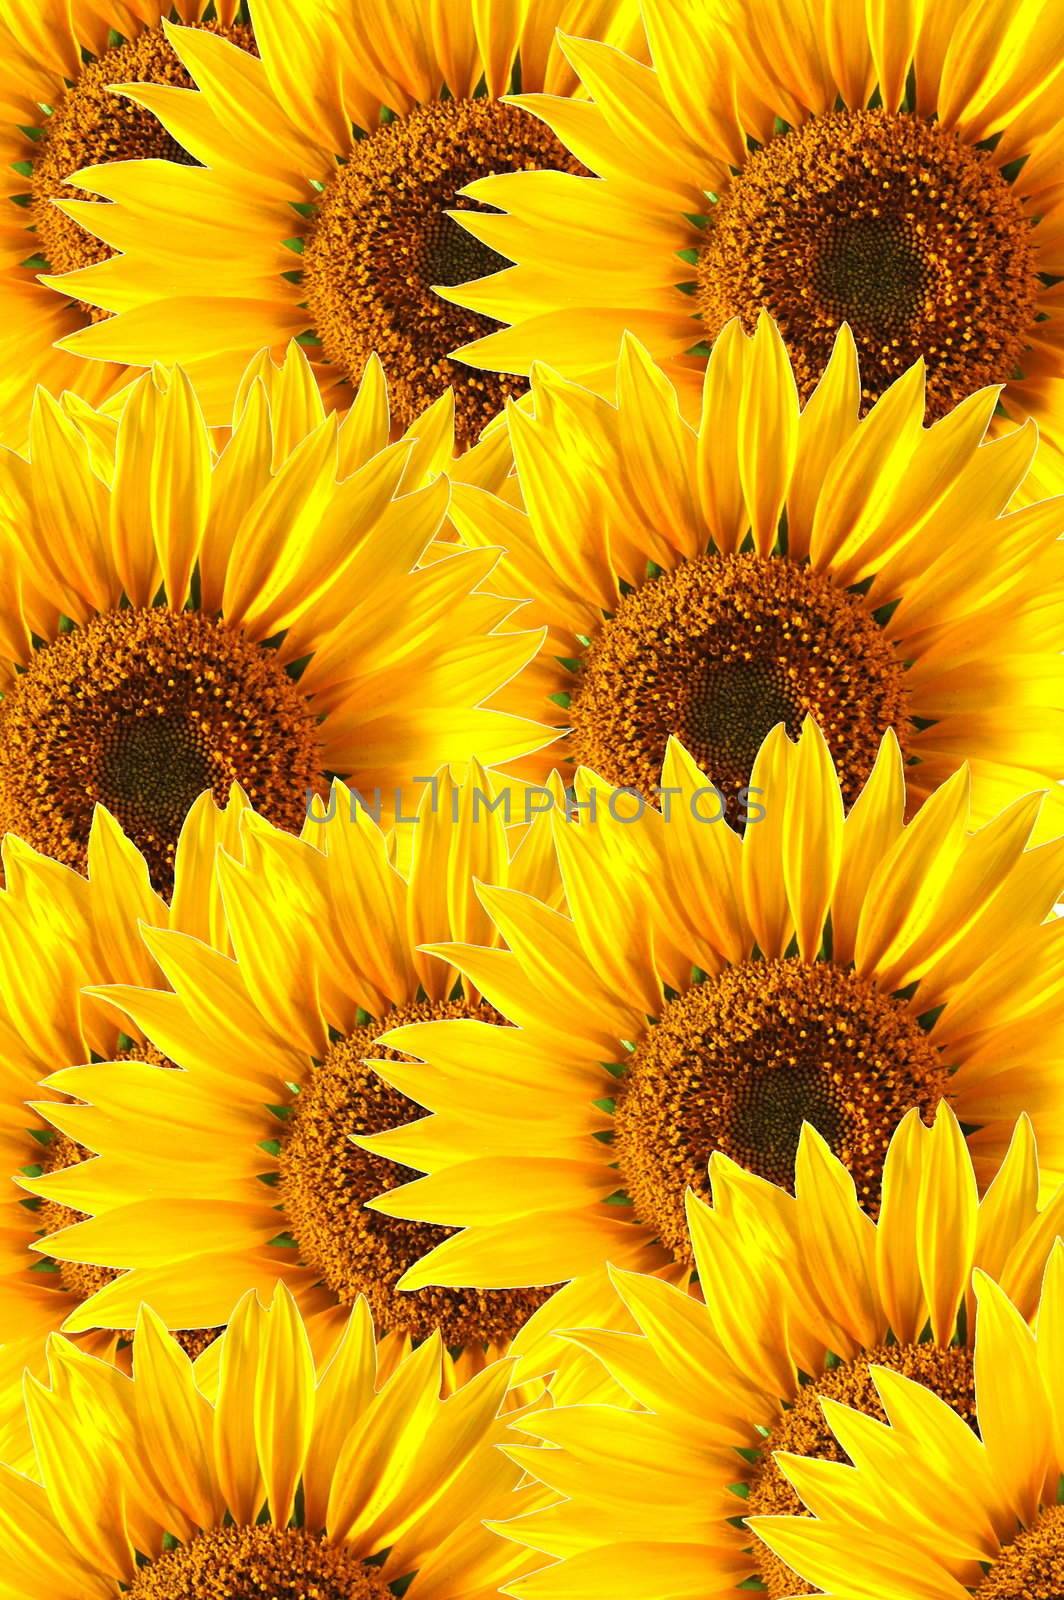 sunflower background by gunnar3000